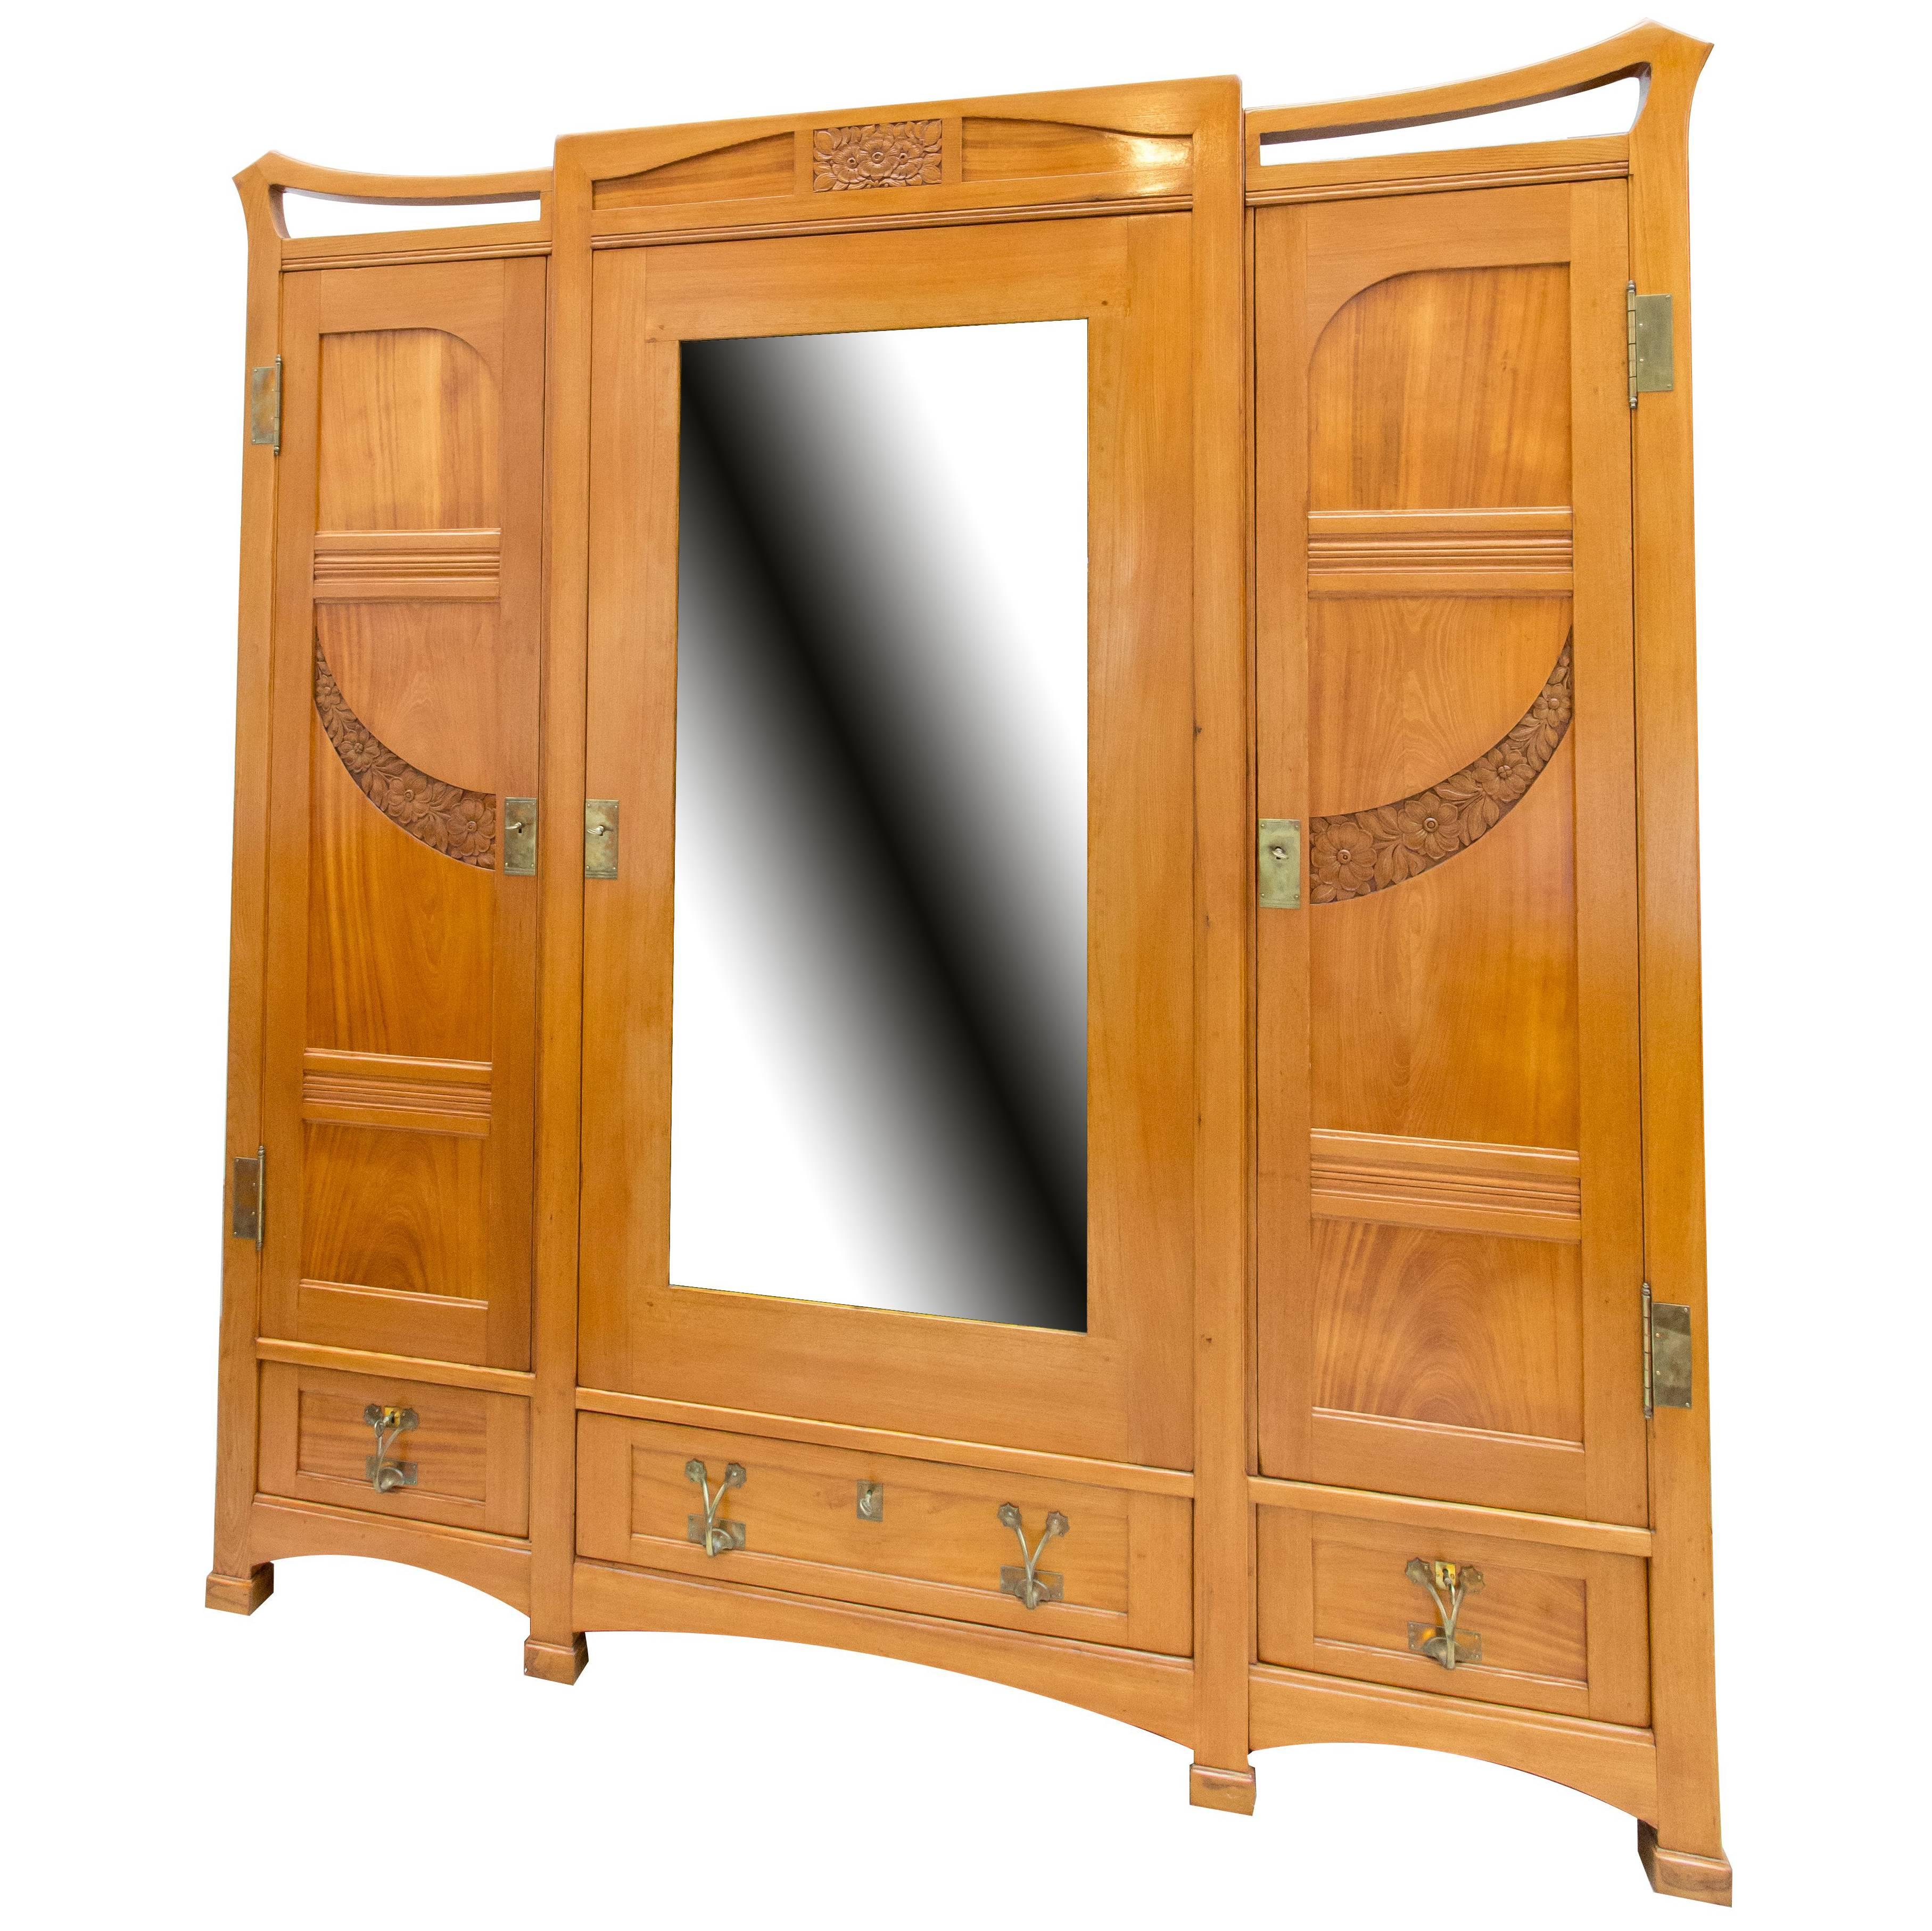 Grande Armoire / Cabinet / Bibliothèque Art Nouveau en bois de frêne massif à trois portes